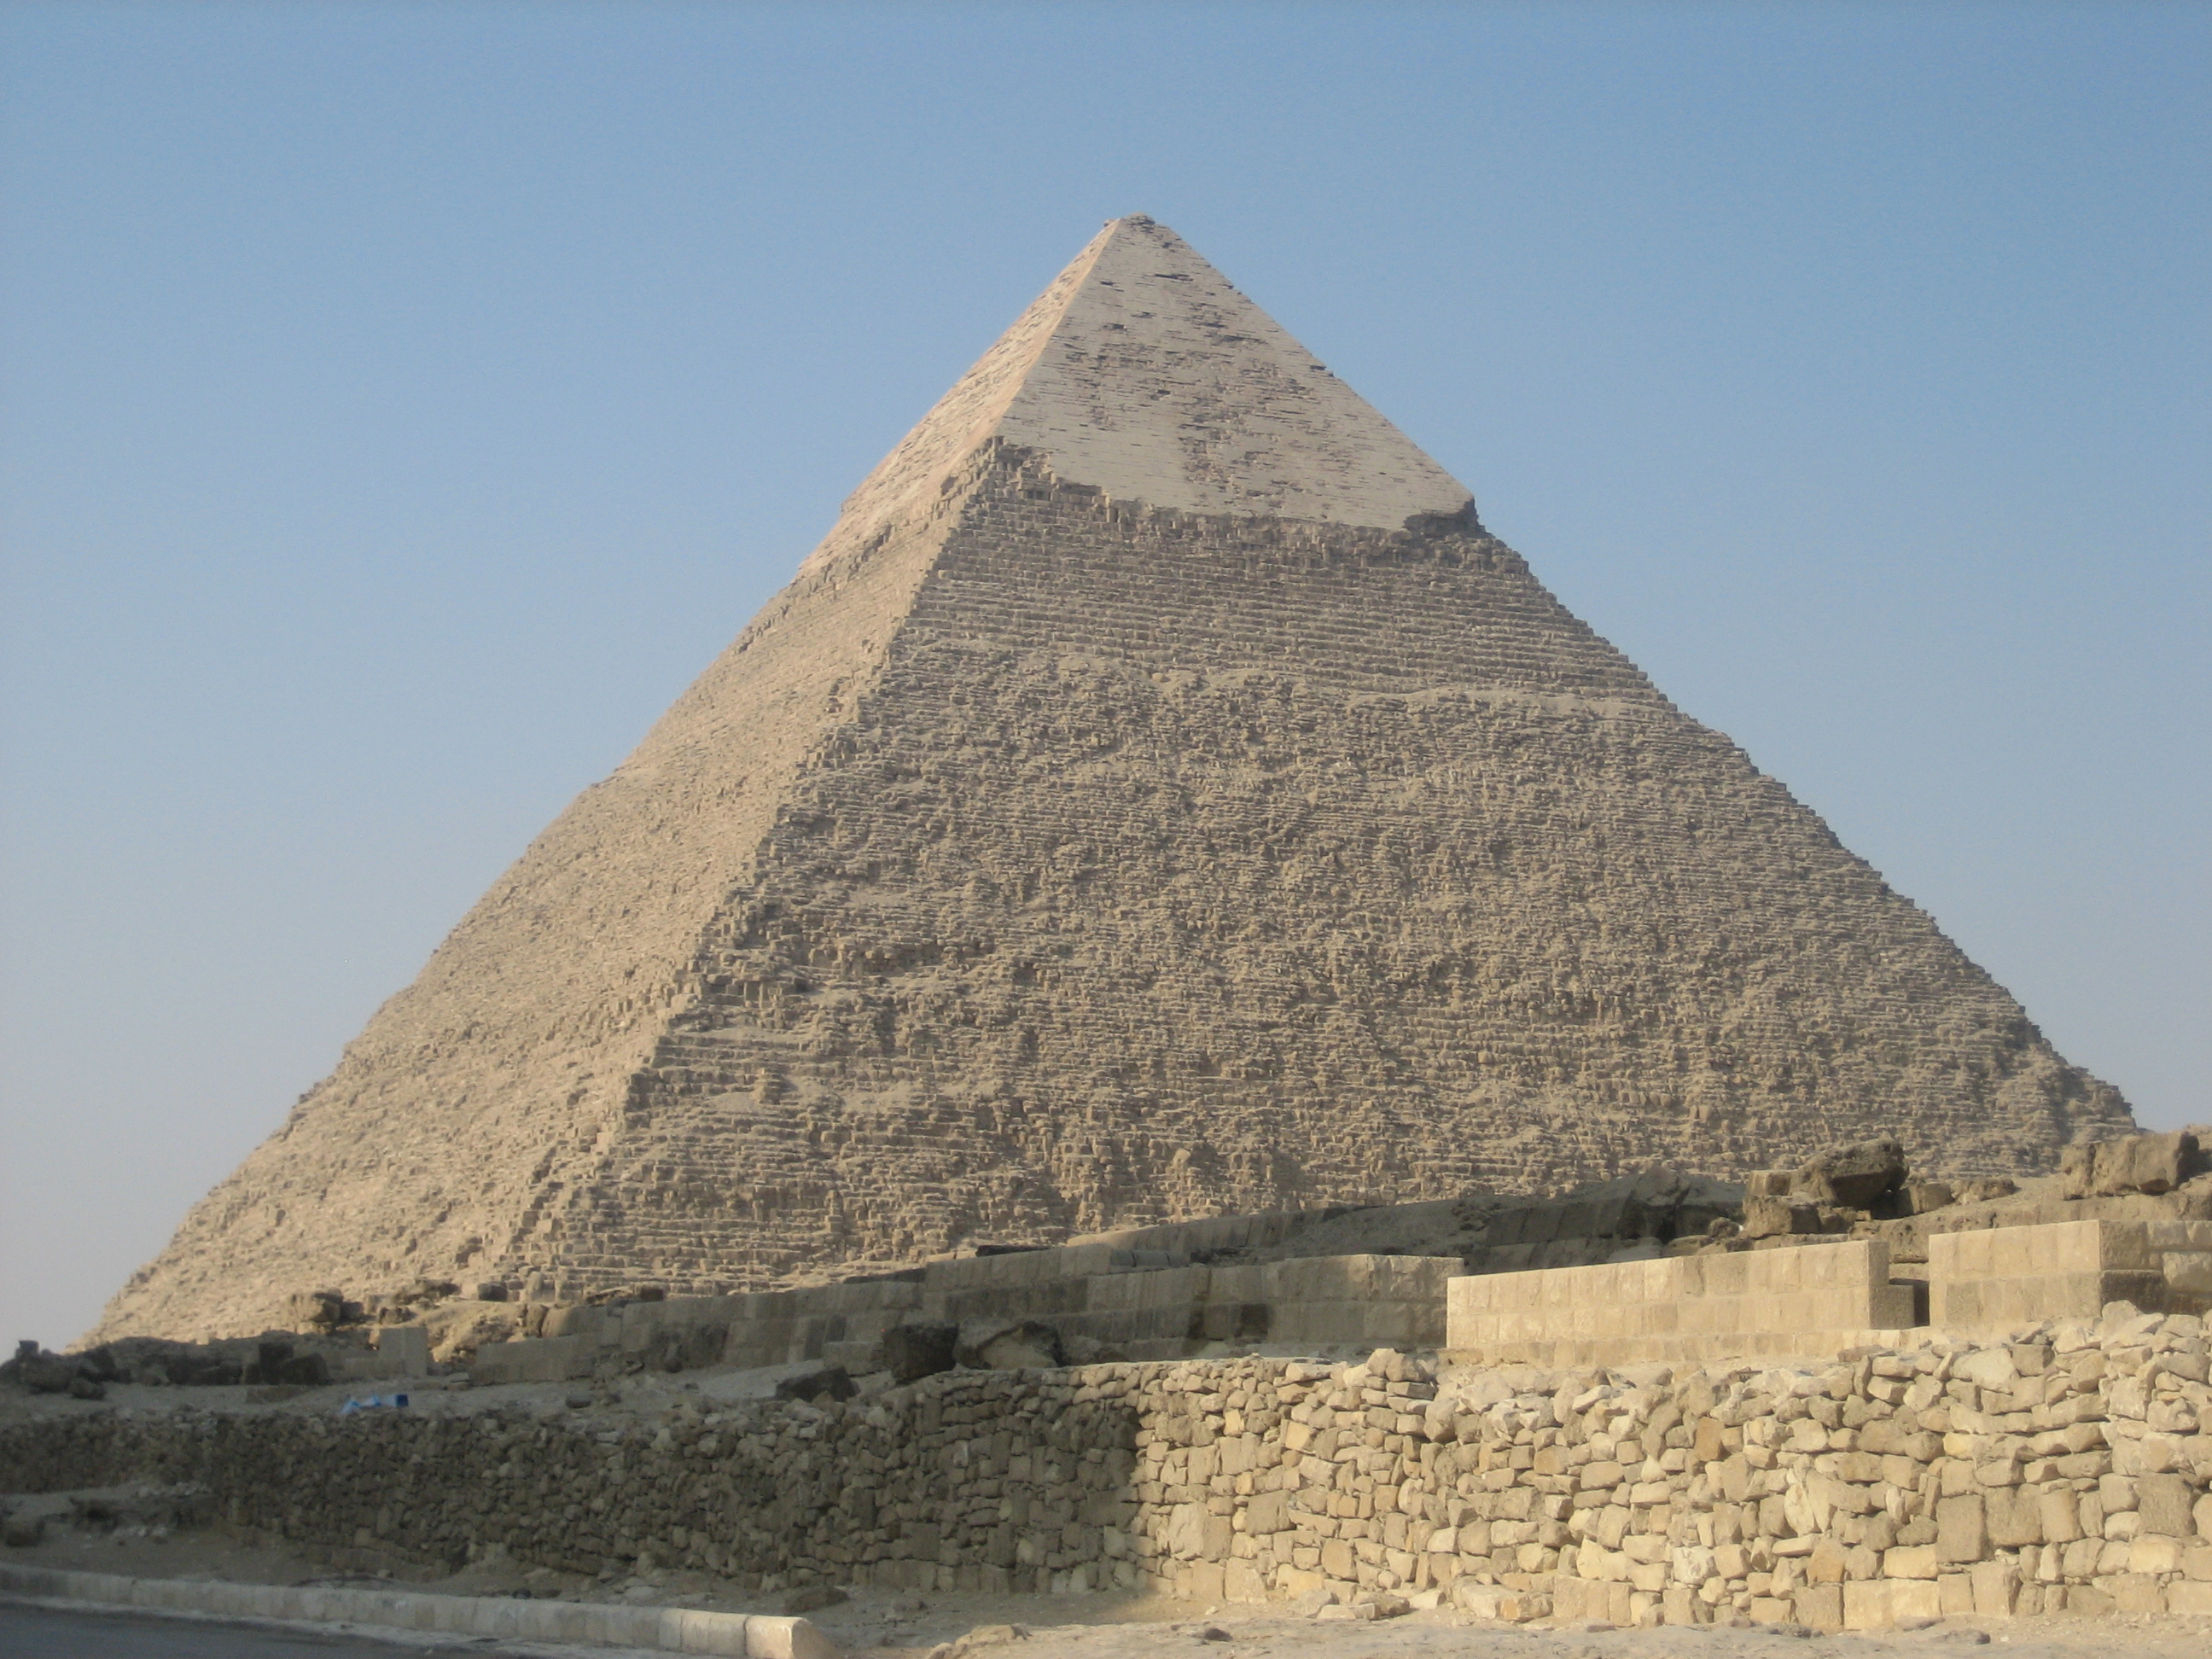 Пирамиды египта названия